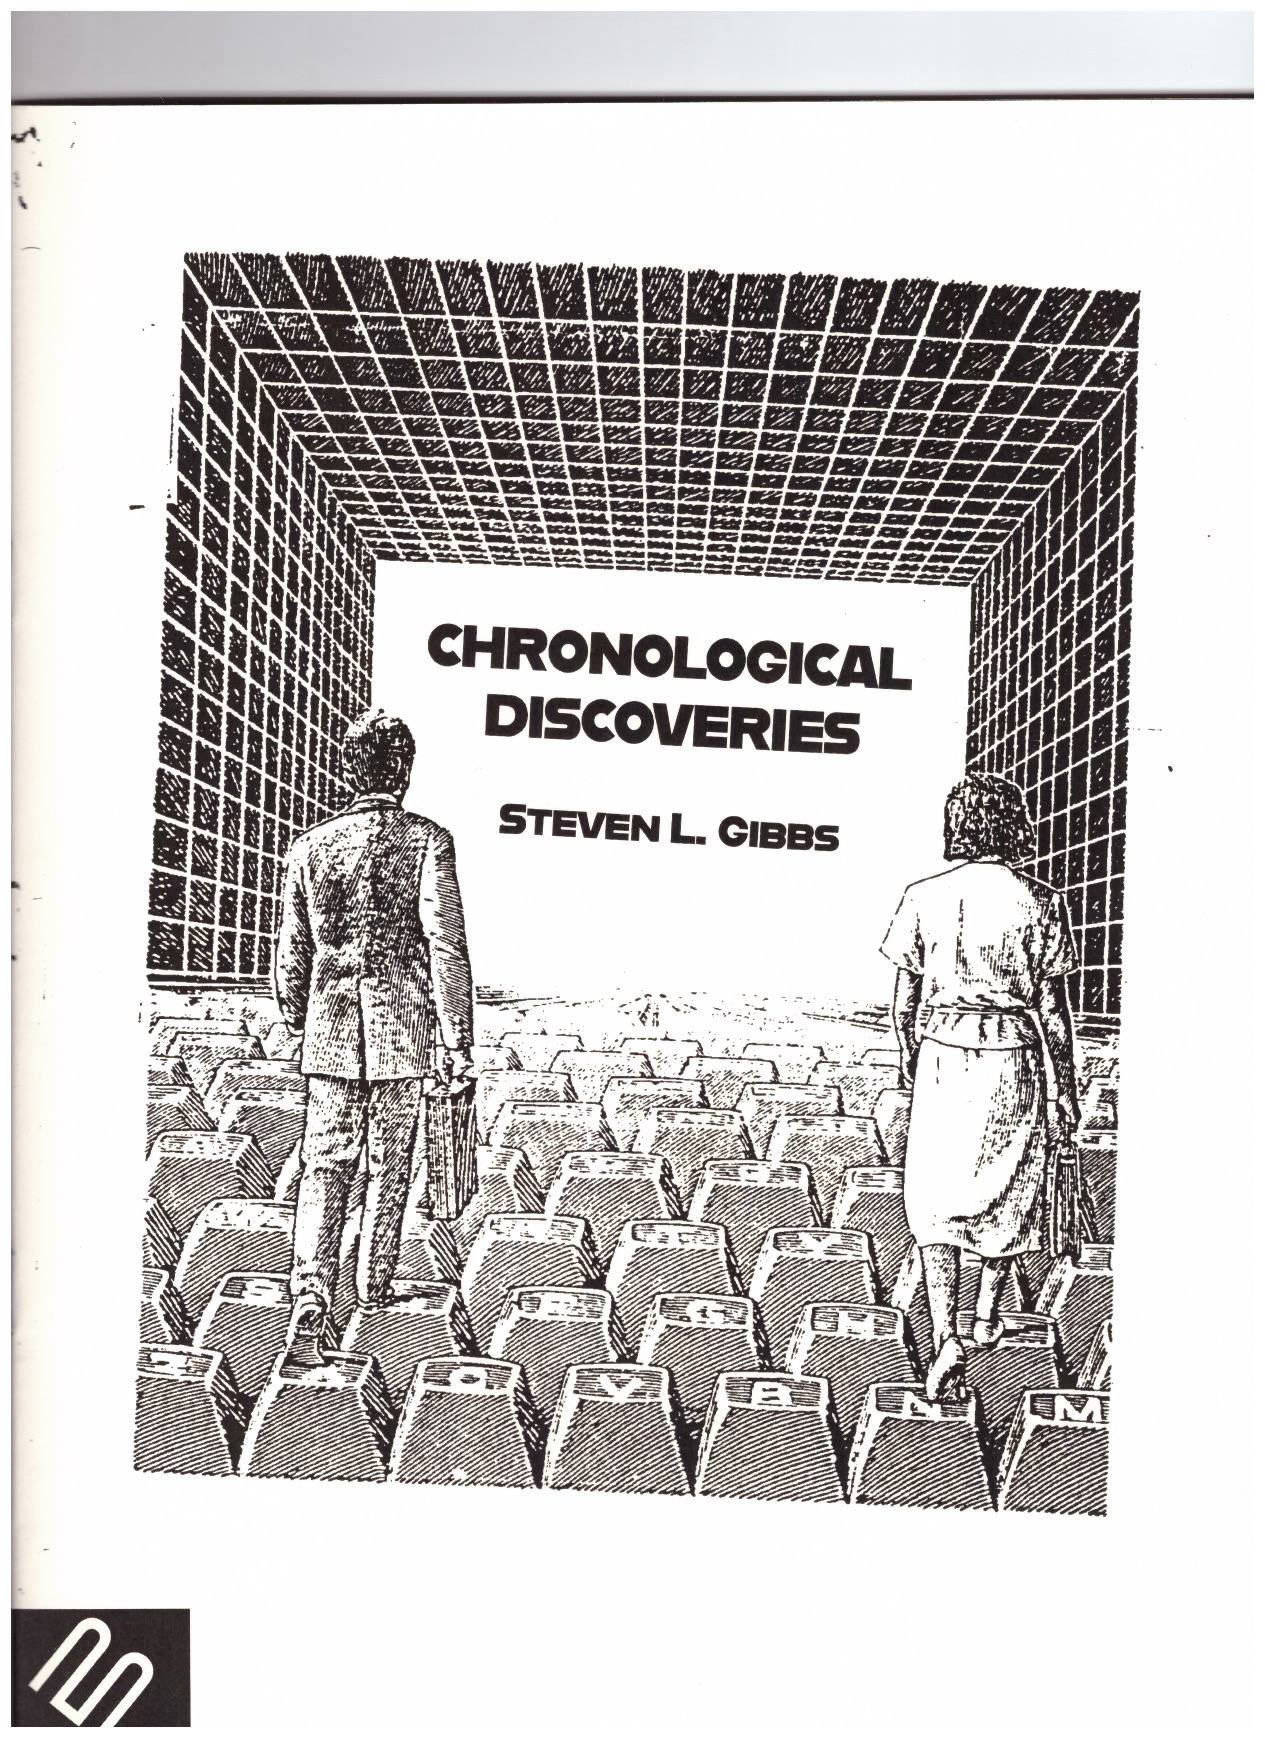 GIBBS, Steven L. - Chronological Discoveries